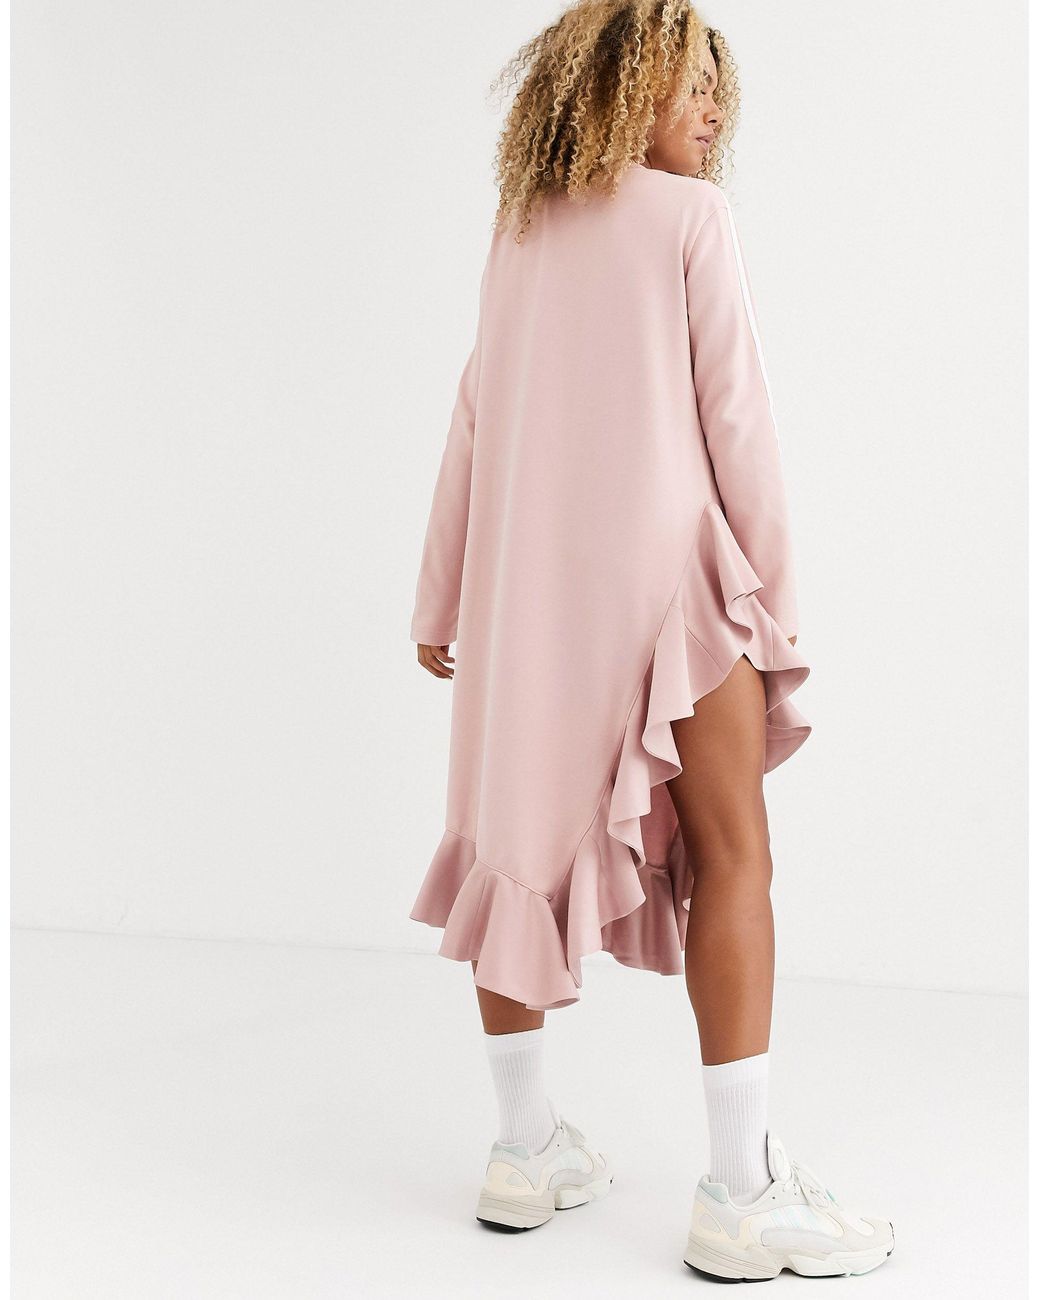 adidas Originals X J Koo Trefoil Ruffle Dress in Pink | Lyst